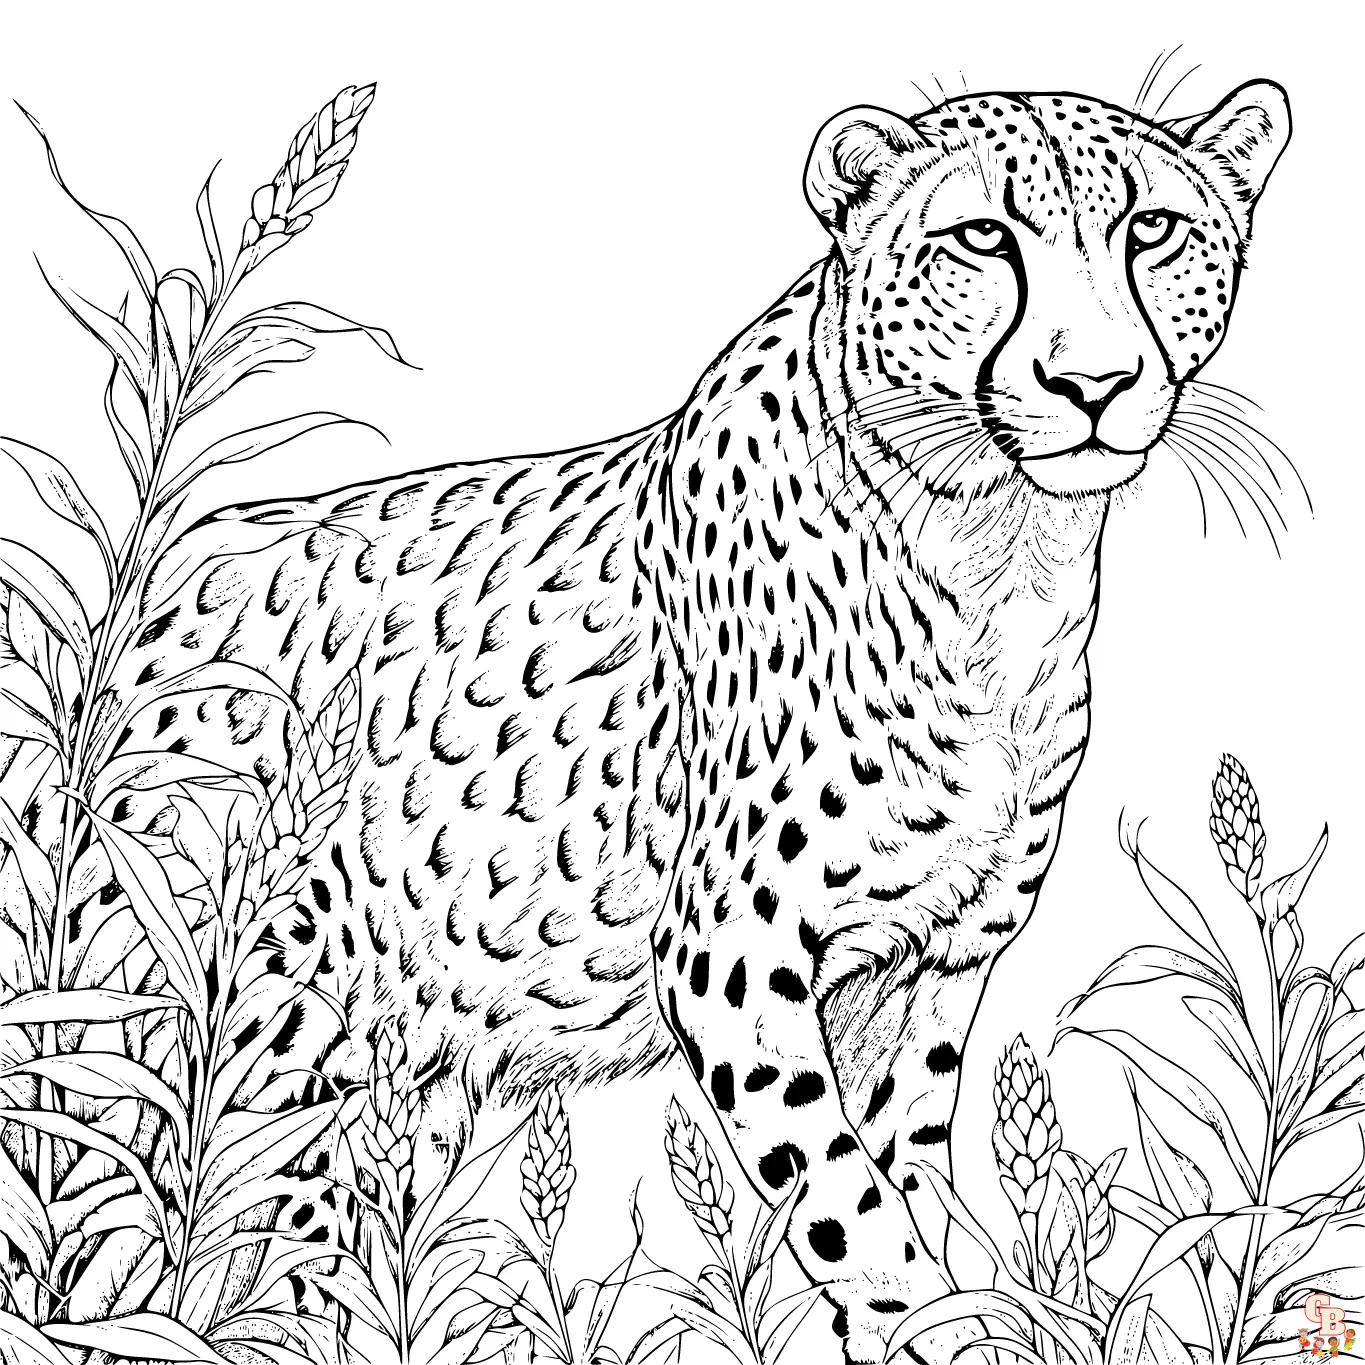 Páginas para colorear de guepardo imprimibles gratis para niños y adultos